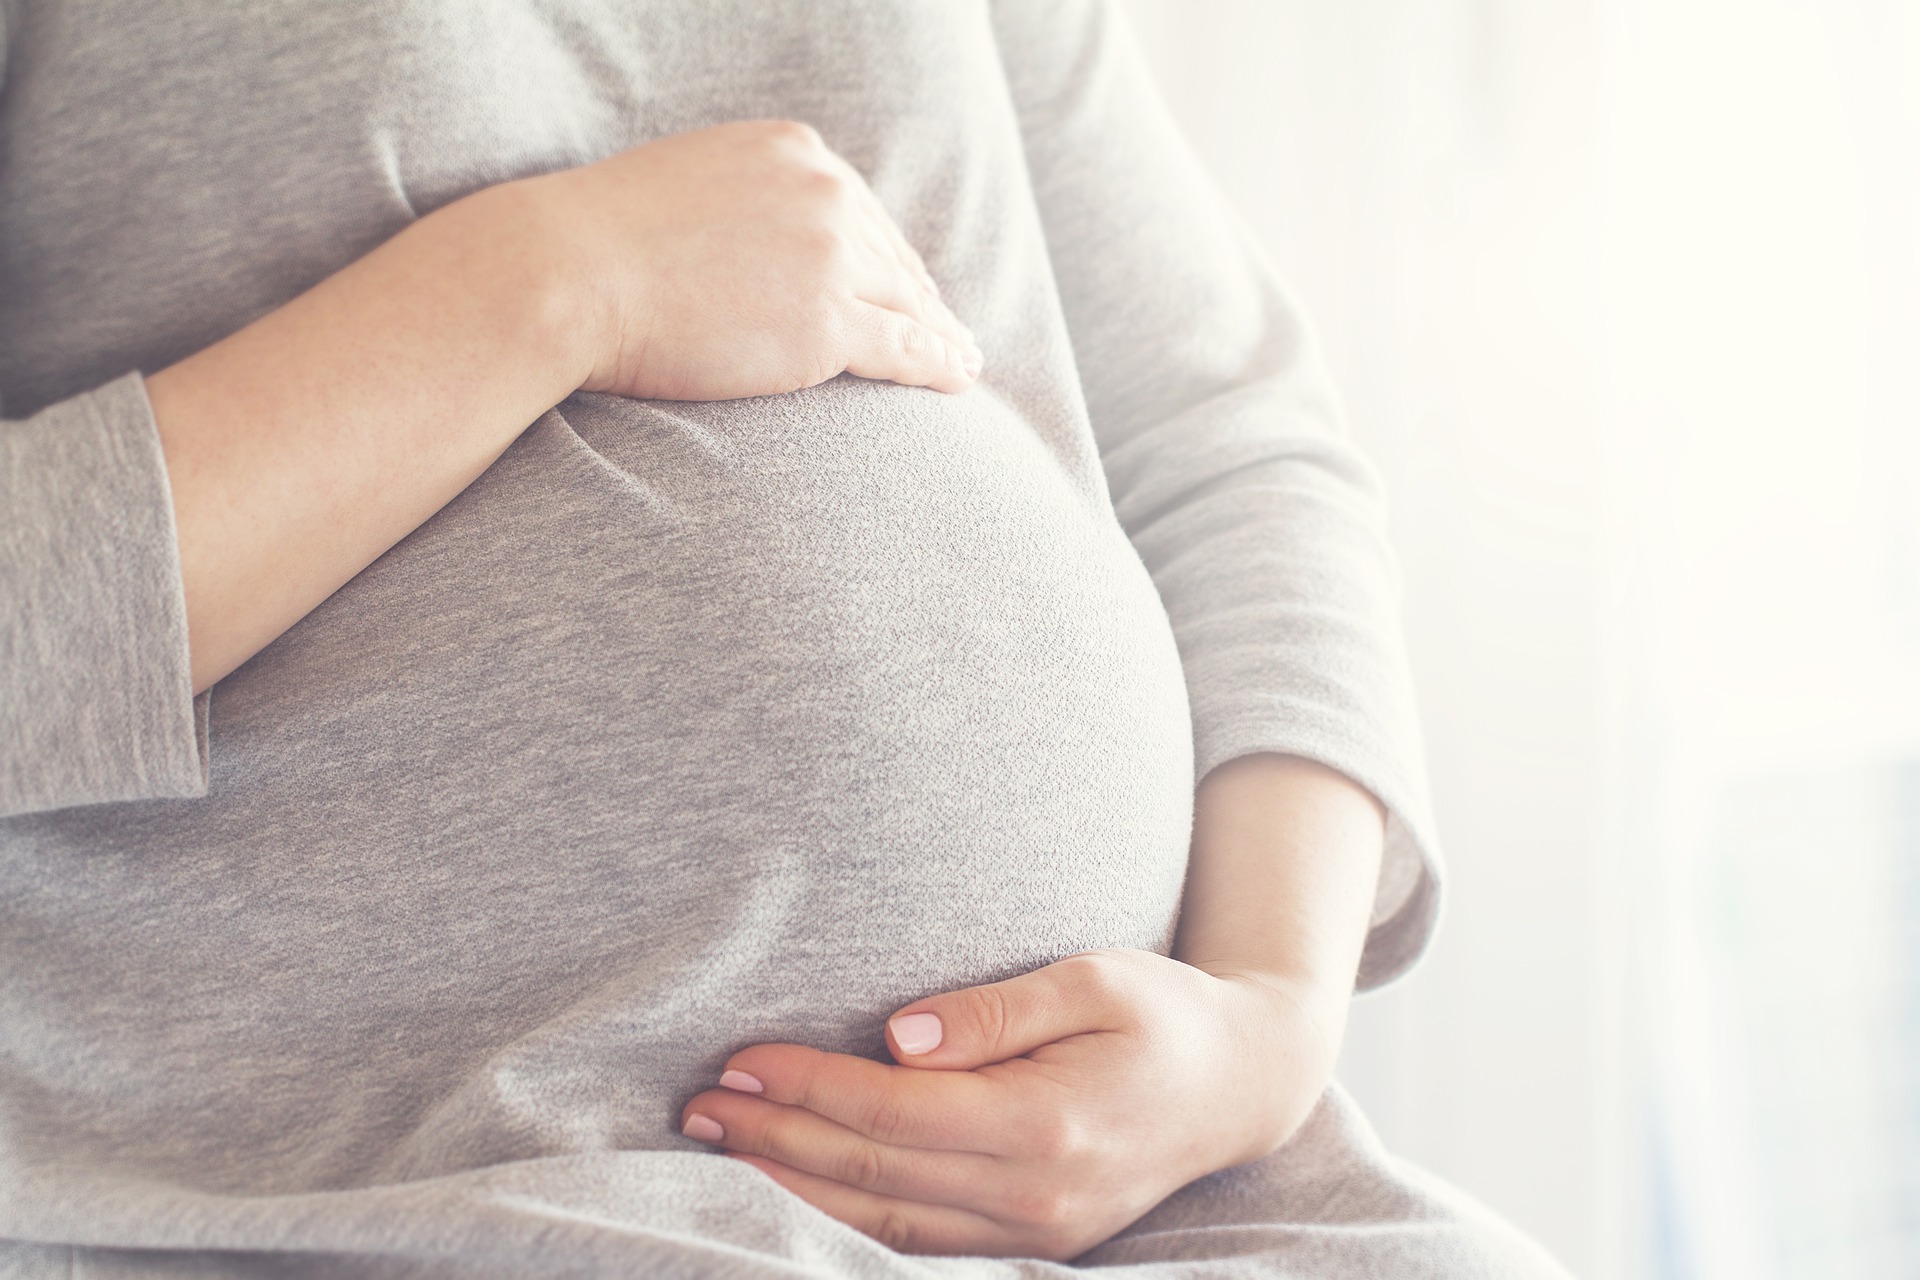 Co to jest ciąża urojona i co należy wiedzieć?